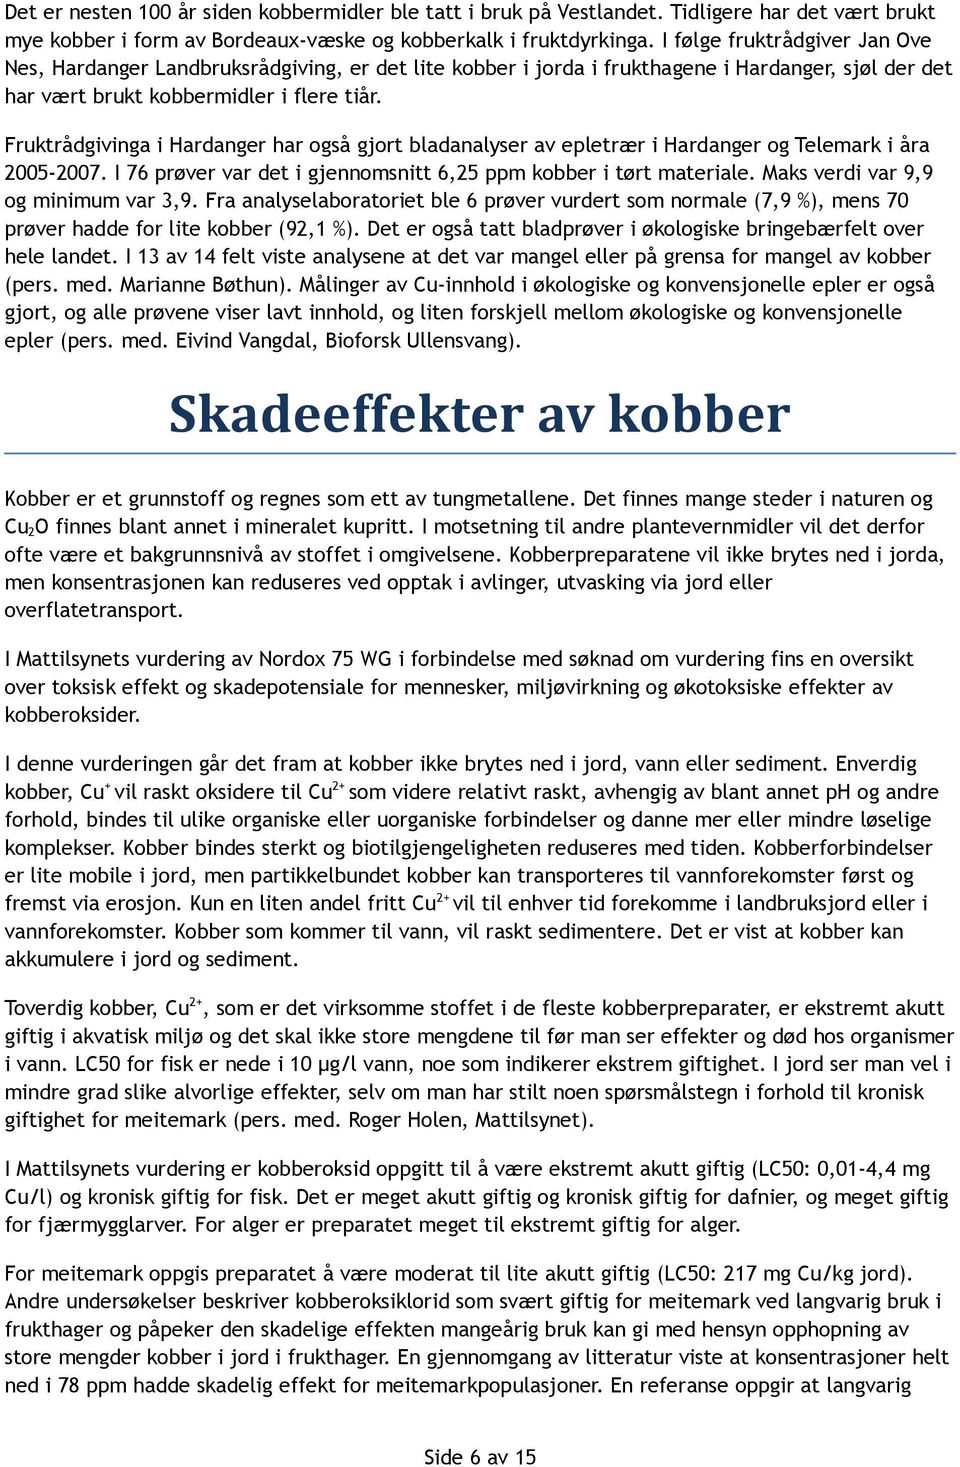 Fruktrådgivinga i Hardanger har også gjort bladanalyser av epletrær i Hardanger og Telemark i åra 2005-2007. I 76 prøver var det i gjennomsnitt 6,25 ppm kobber i tørt materiale.